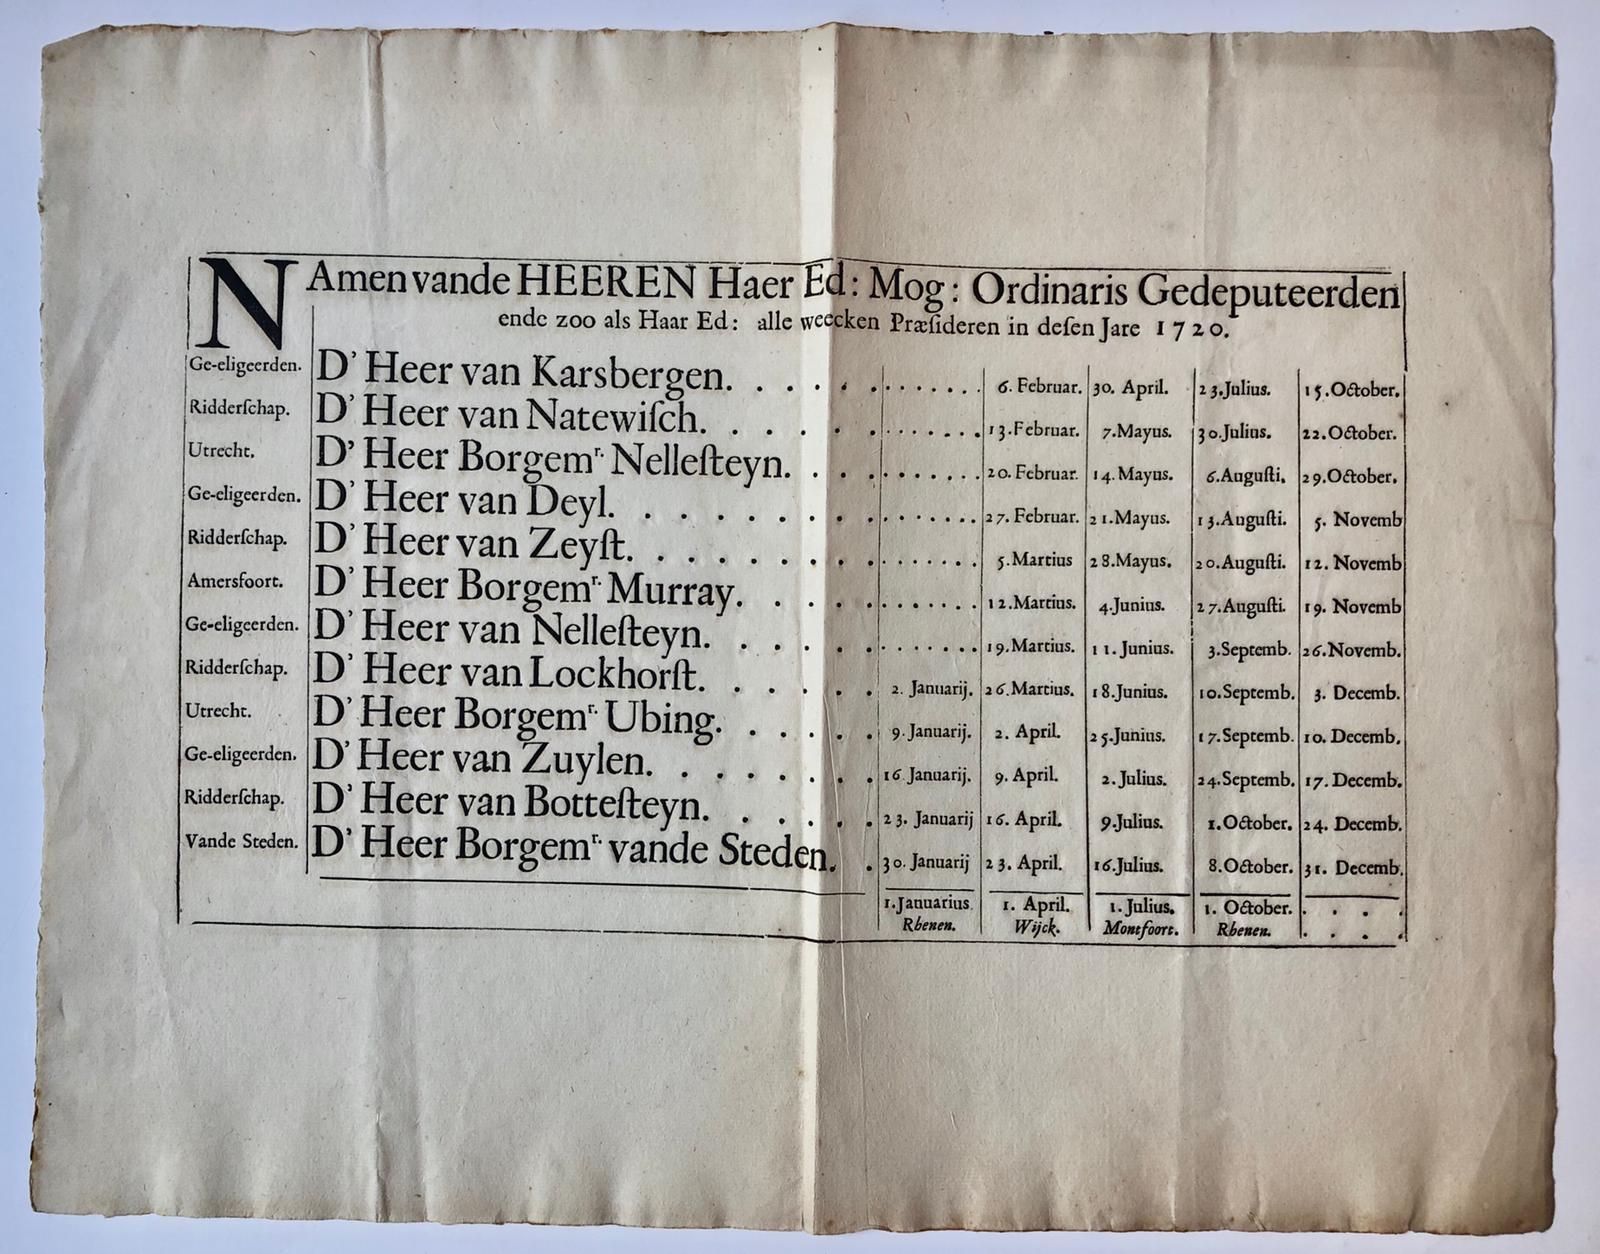 [Printed publication 1720] “Namen van de heeren haer ed. mog. ordinaris gedeputeerden [van Utrecht], ende zoo als haer ed. alle weecken praesideren in dezen jare 1720”, 1 blad plano oblong, gedrukt.